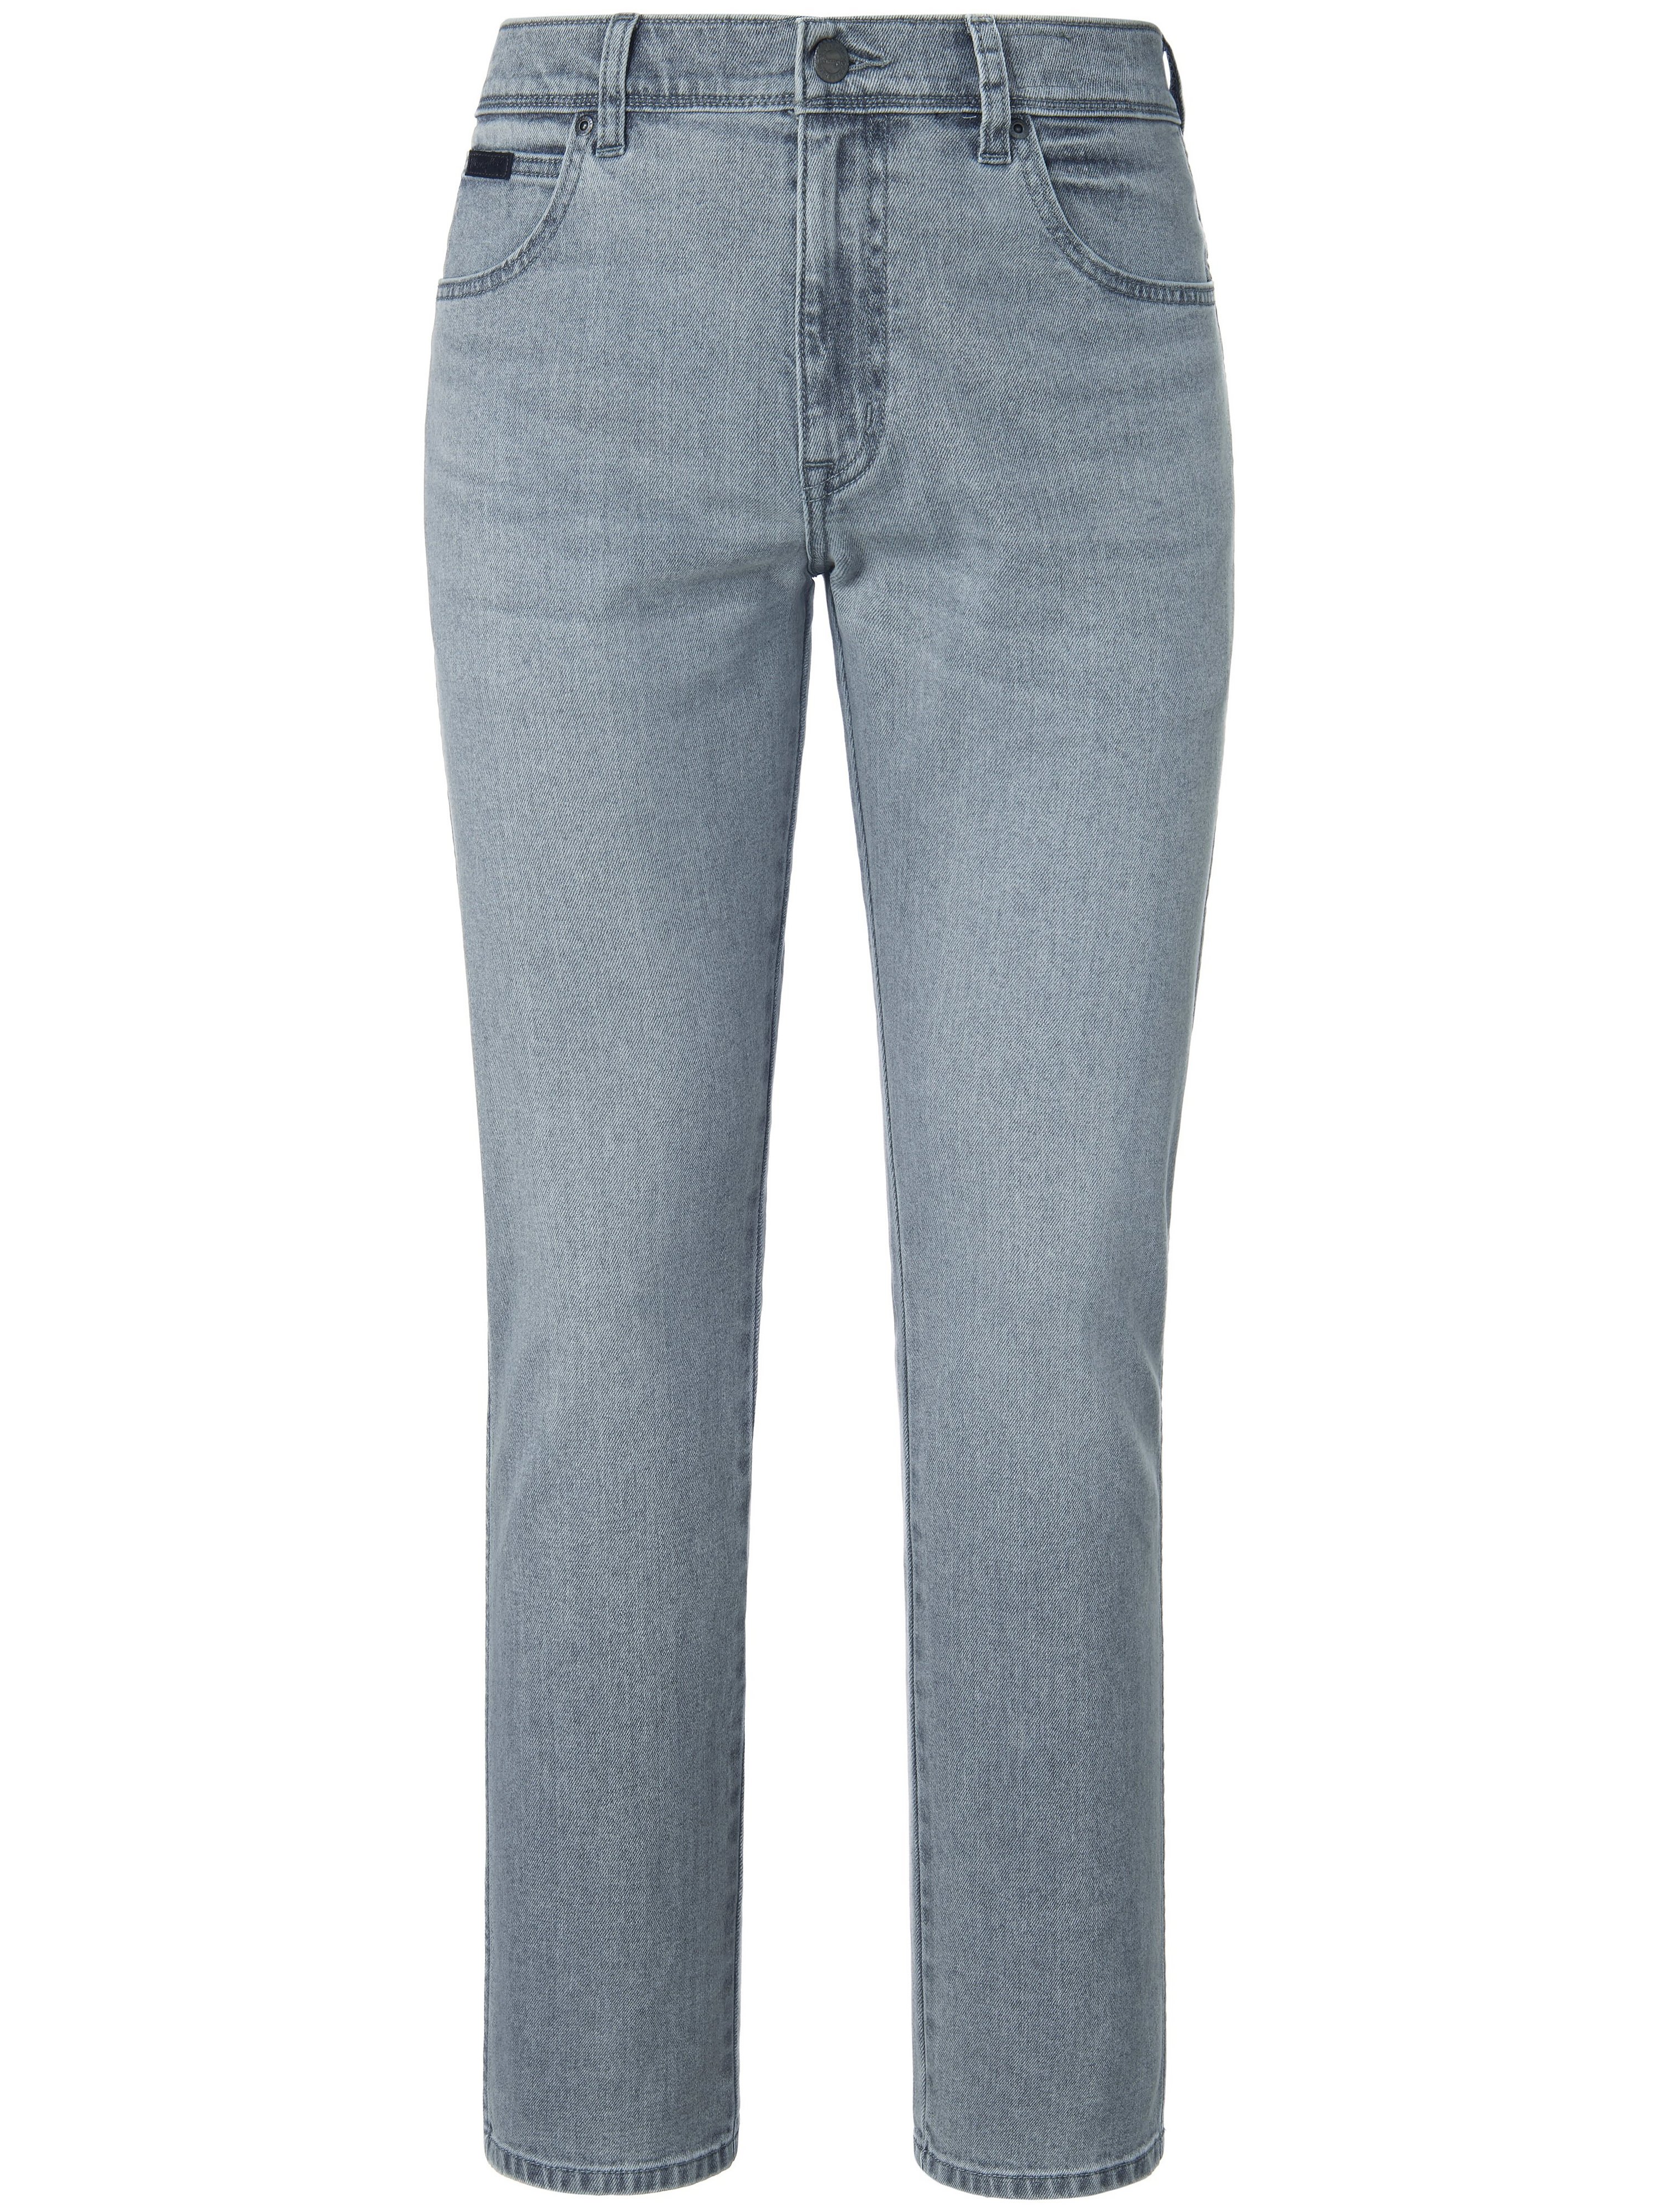 Jeans Inch 32 Wrangler grau Größe: 35